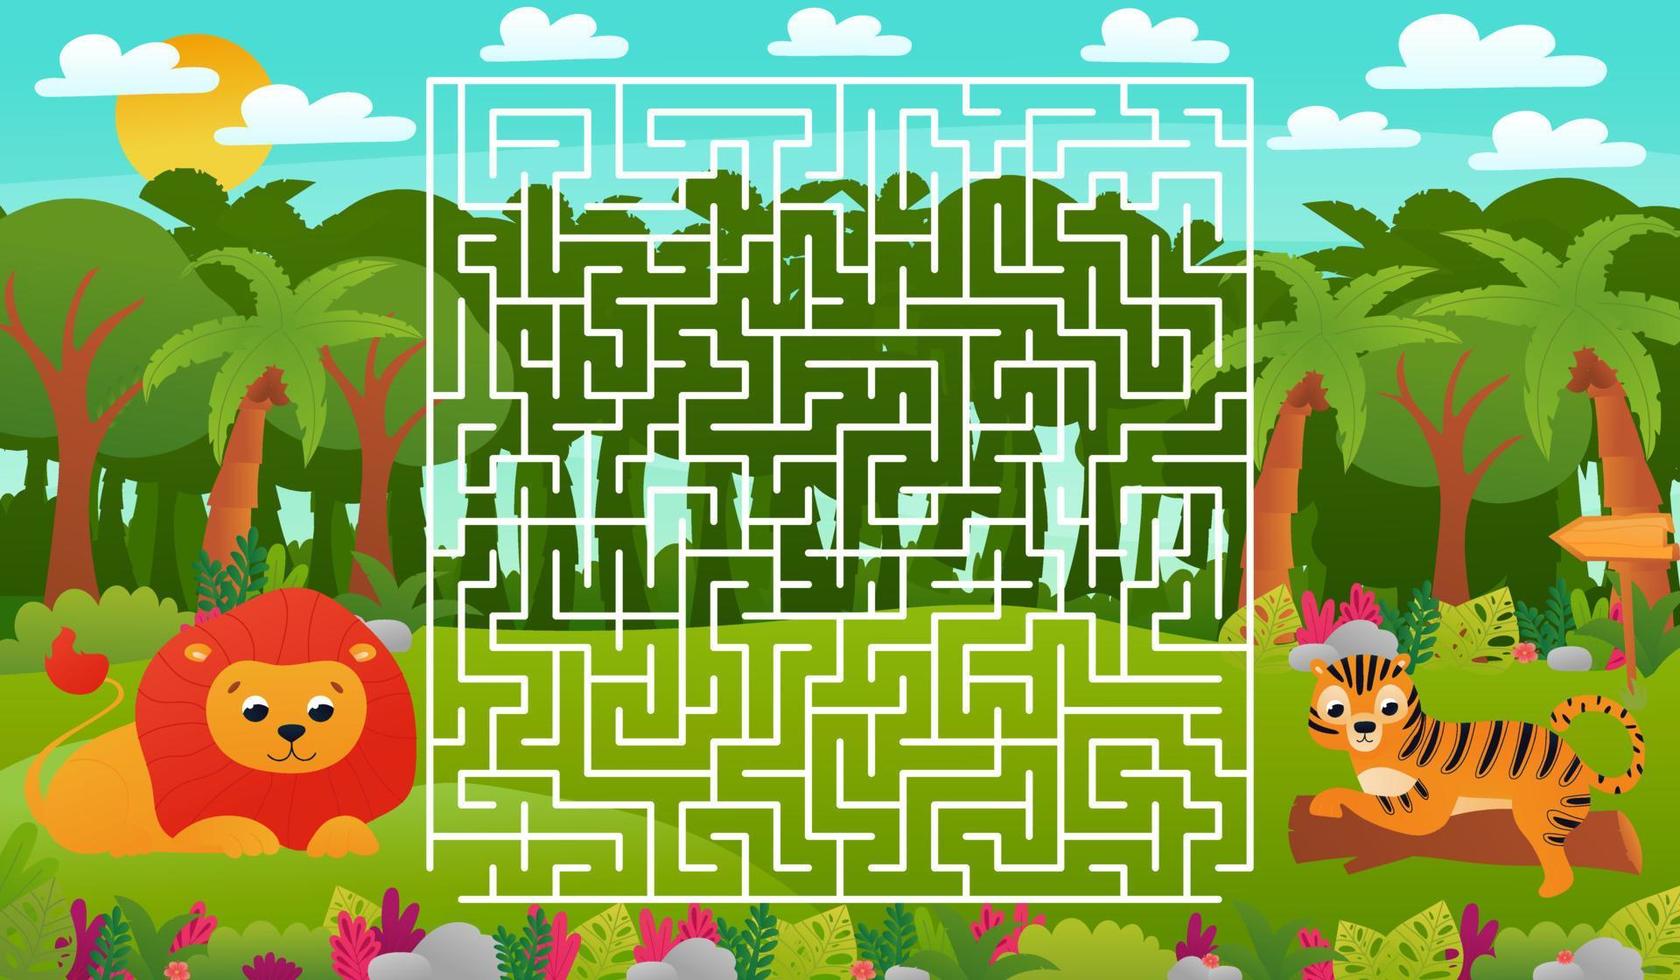 feuille de travail éducative imprimable pour les enfants avec puzzle labyrinthe, animaux de la jungle tropicale faune avec lion mignon vecteur